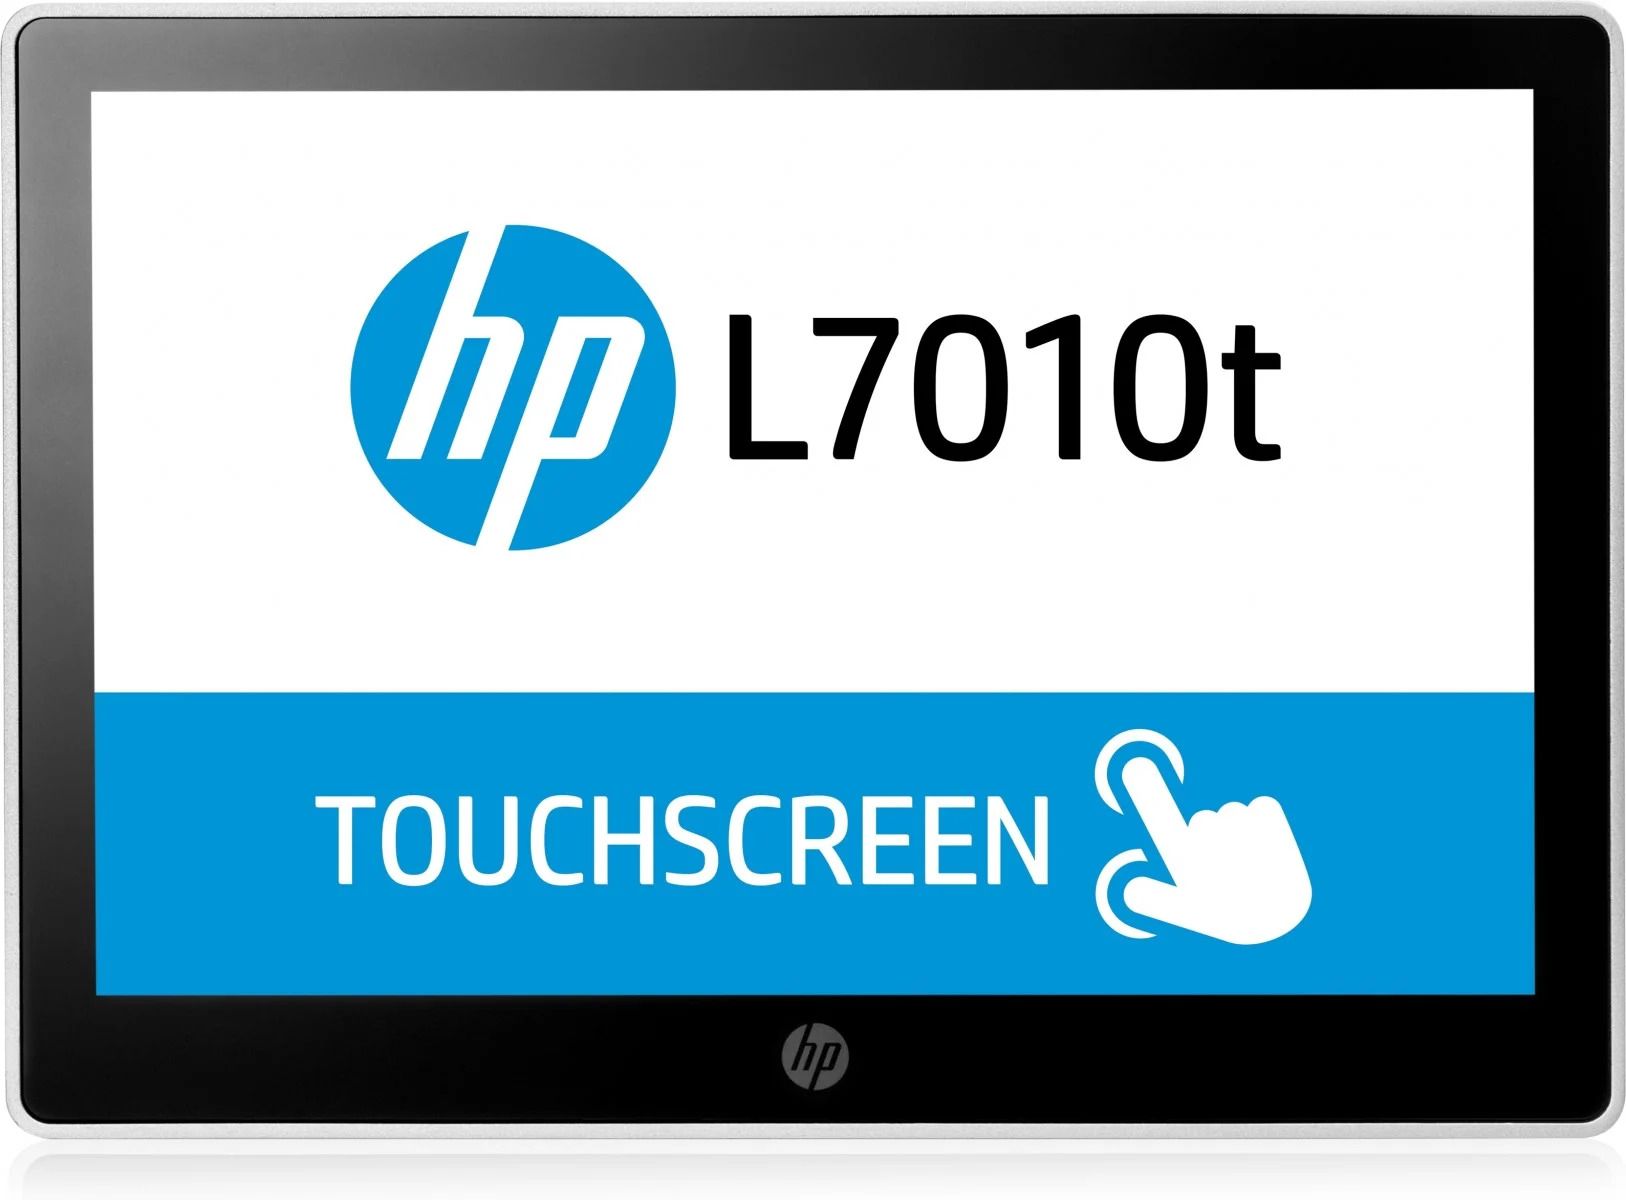 DOTYKOVÝ LCD Monitor 10.1" HP L7010t - repasovaný